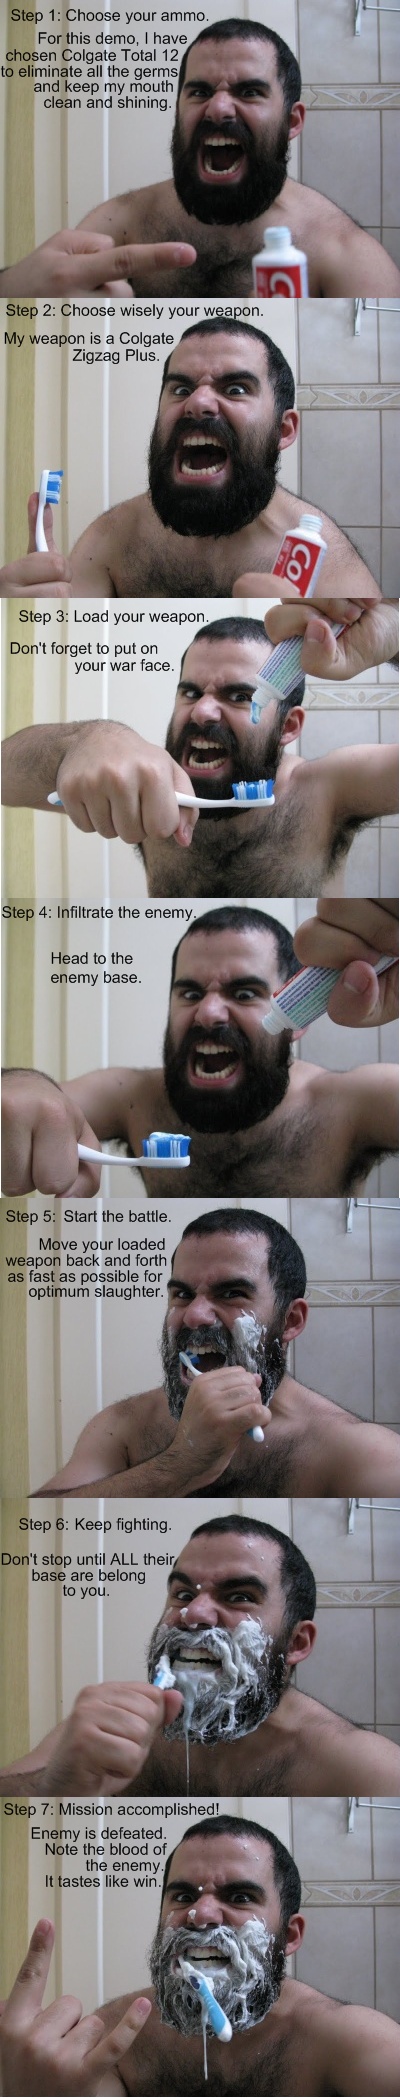 สอนวิธีแปลงฟัน